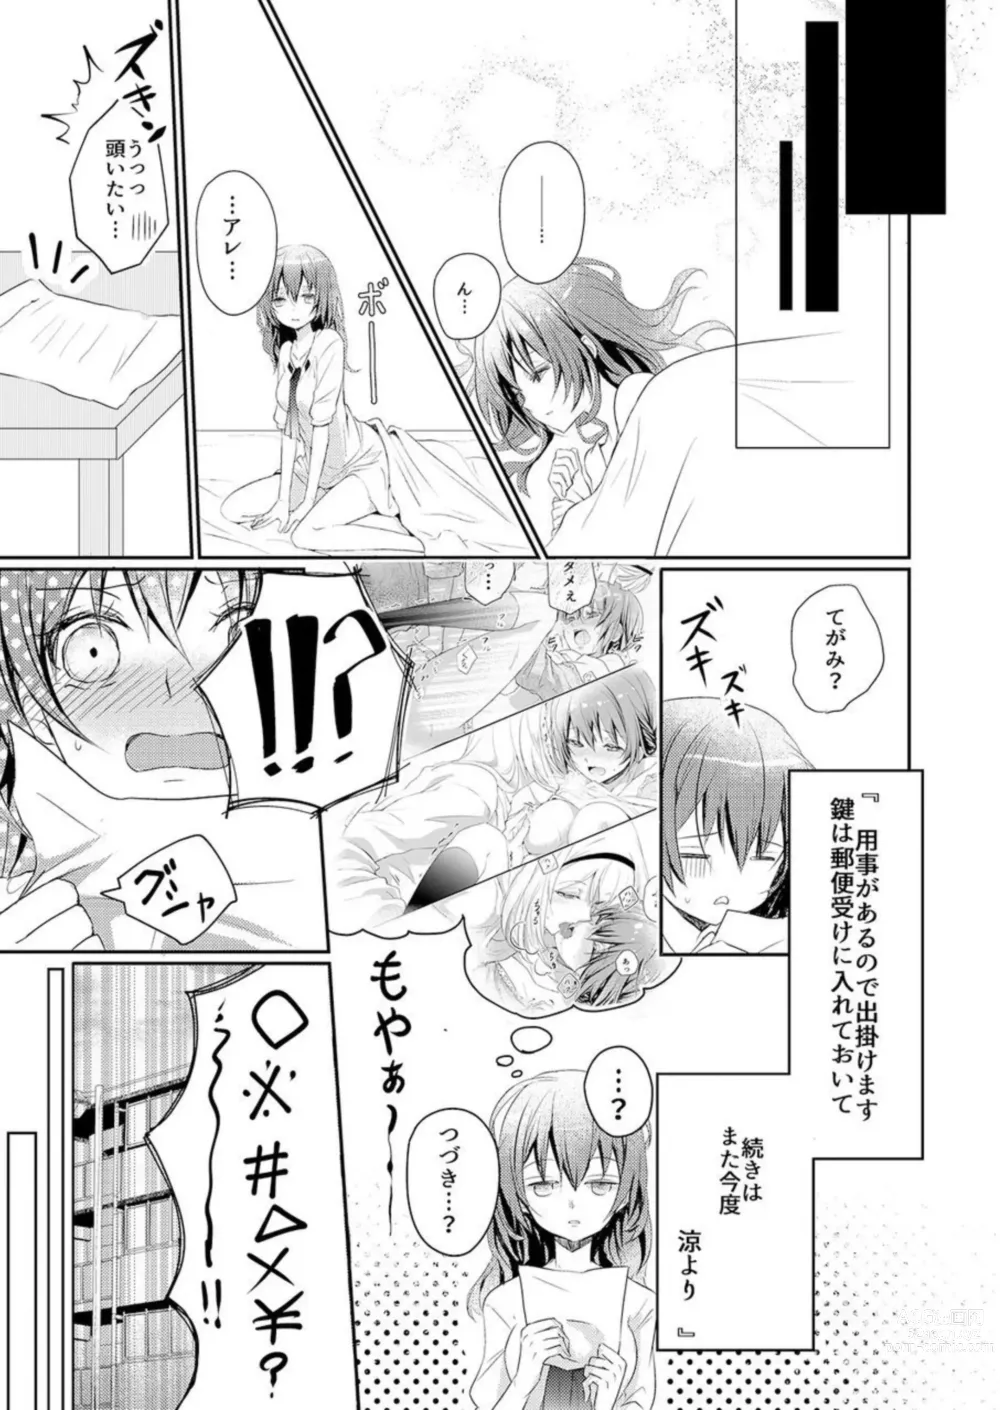 Page 15 of manga Skirt no Naka wa Kedamono Deshita 1